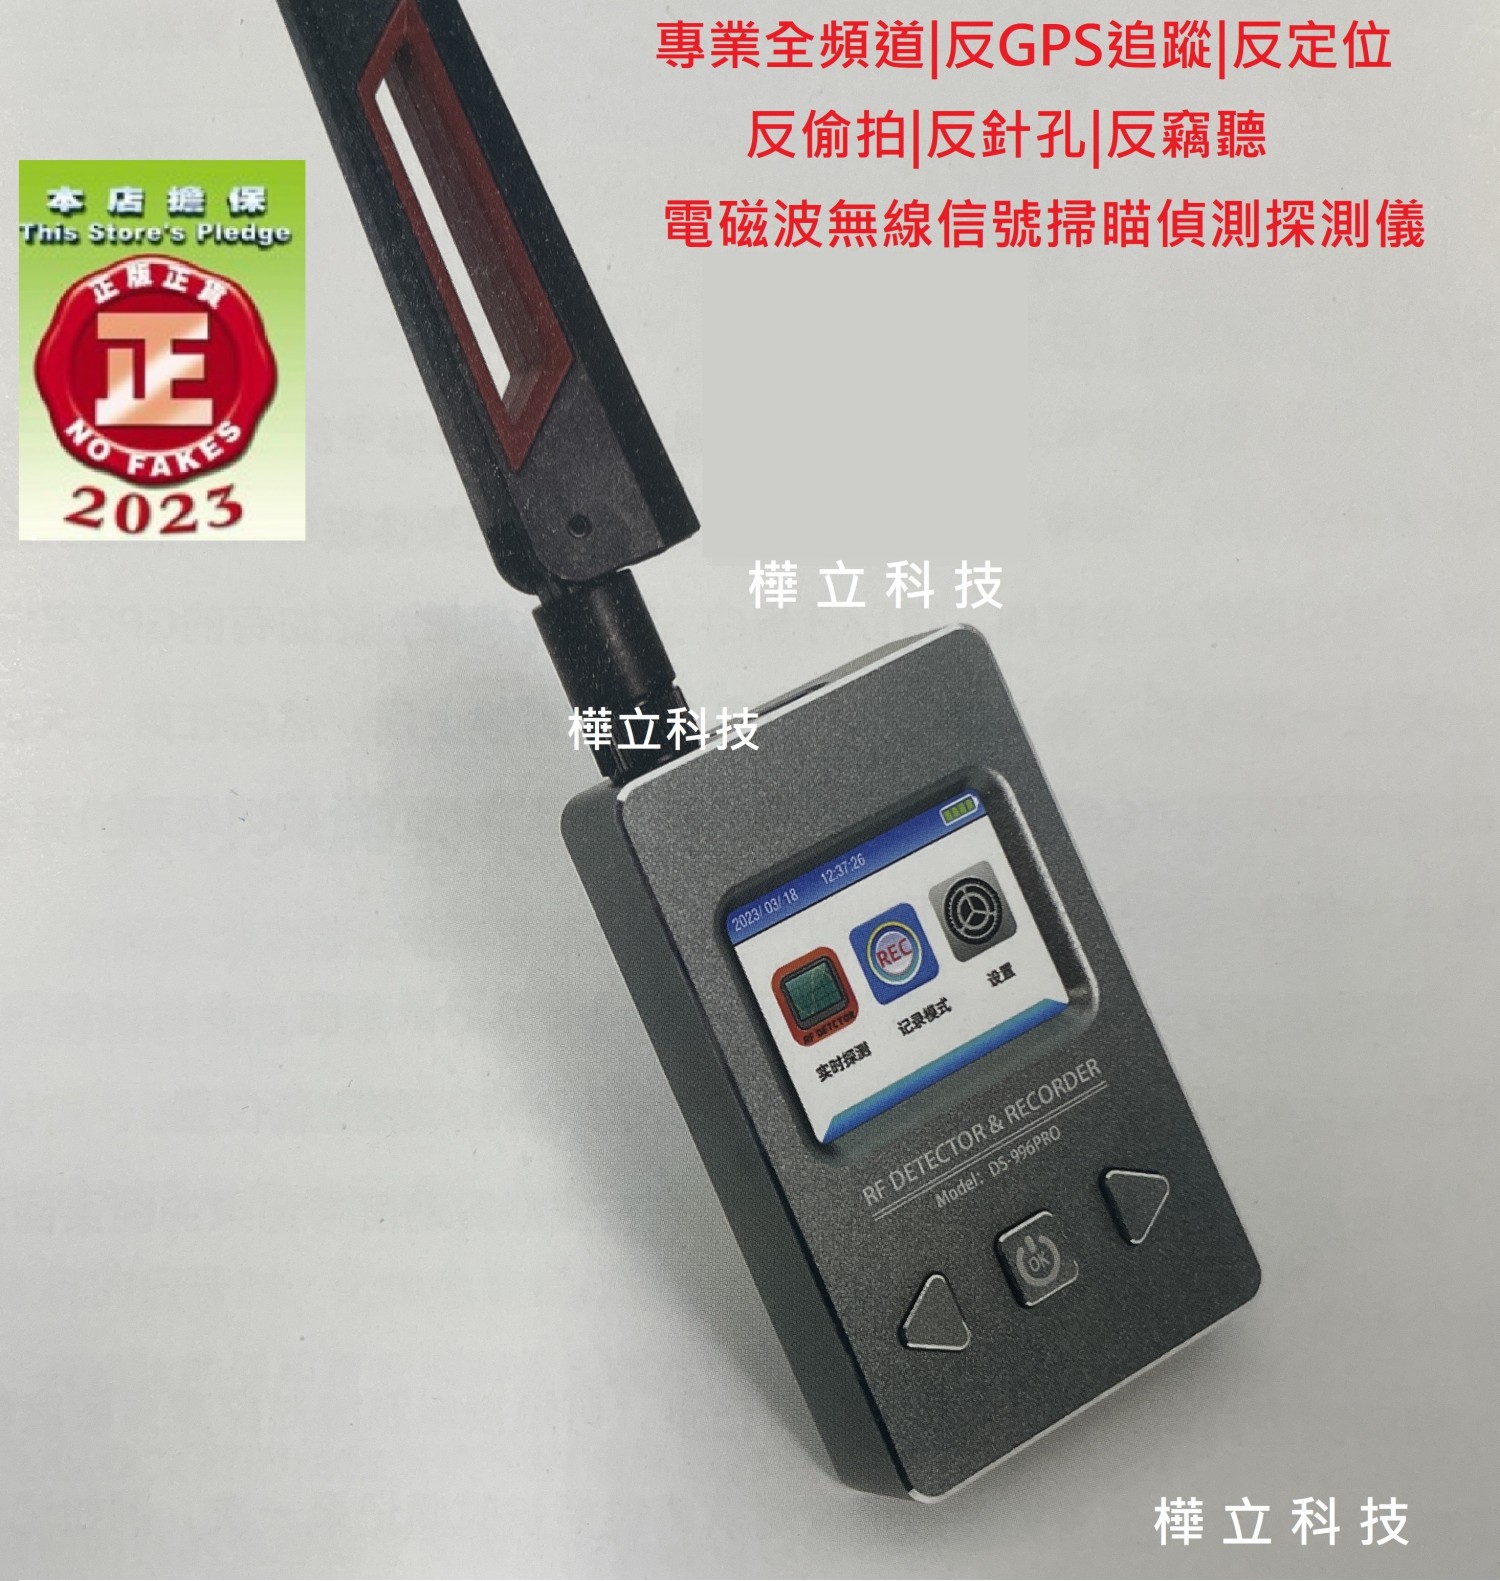 2023台灣正版現貨,專業全頻道2G.3G.4G.5G反GPS追蹤|反定位|反偷拍|反針孔|反竊聽|電磁波信號掃瞄偵測探測記錄儀DS-996